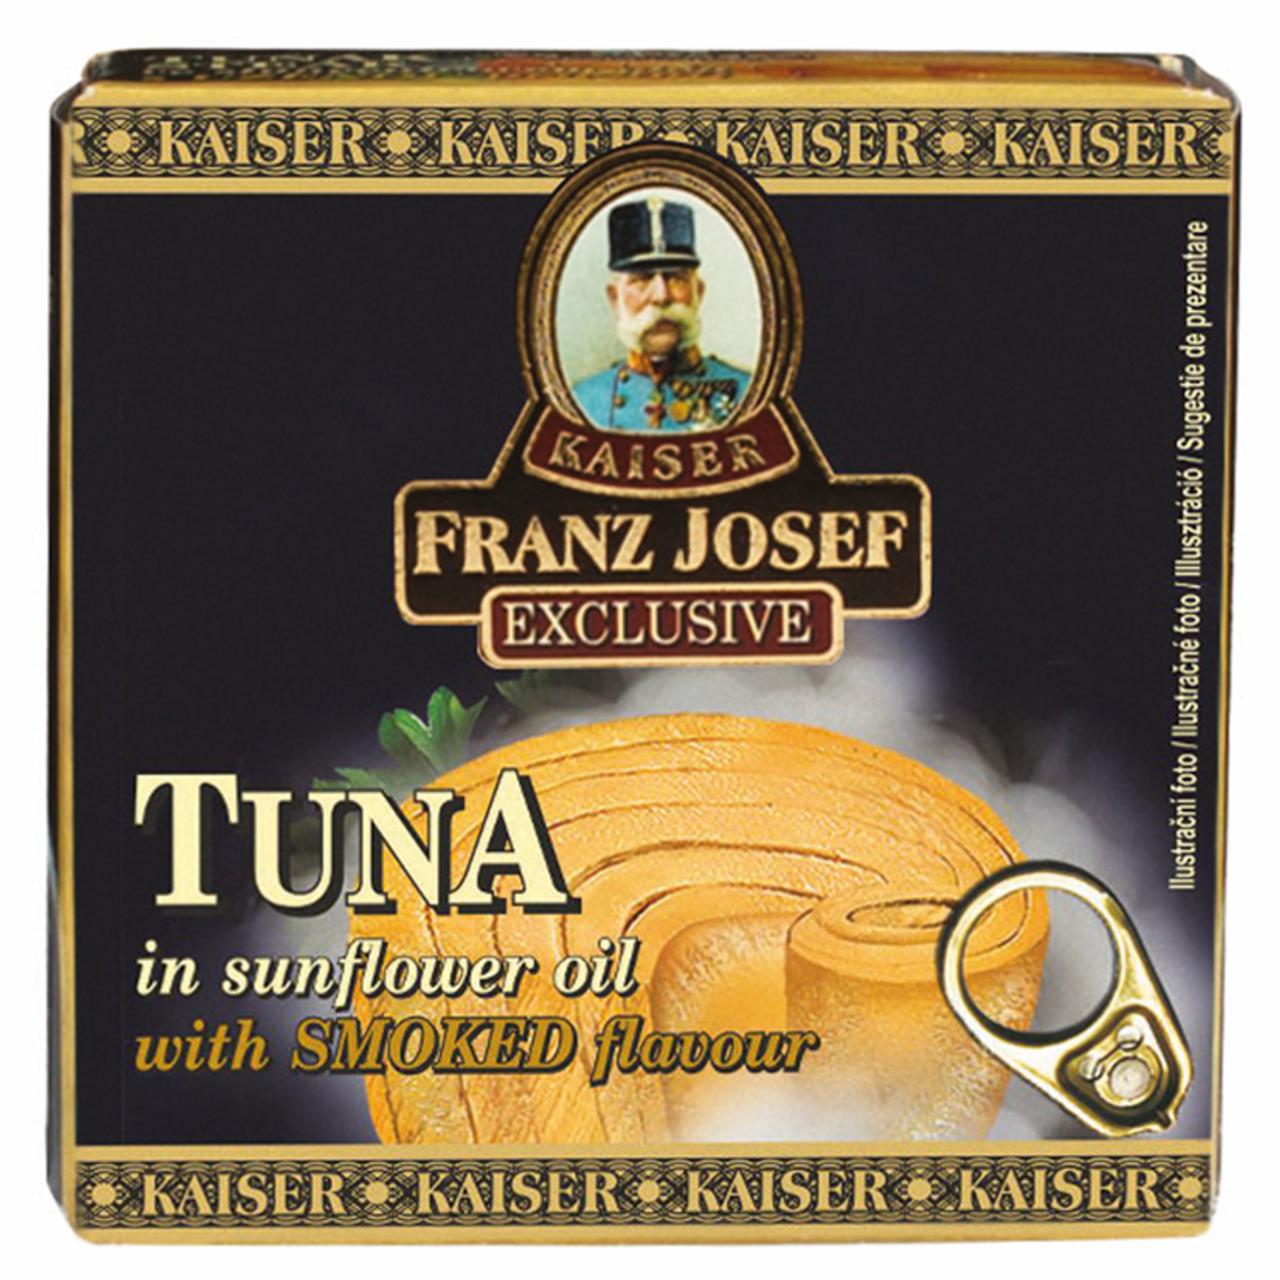 Képek - Kaiser Franz Josef Exclusive tonhal napraforgó olajban füstölt ízesítéssel 80 g